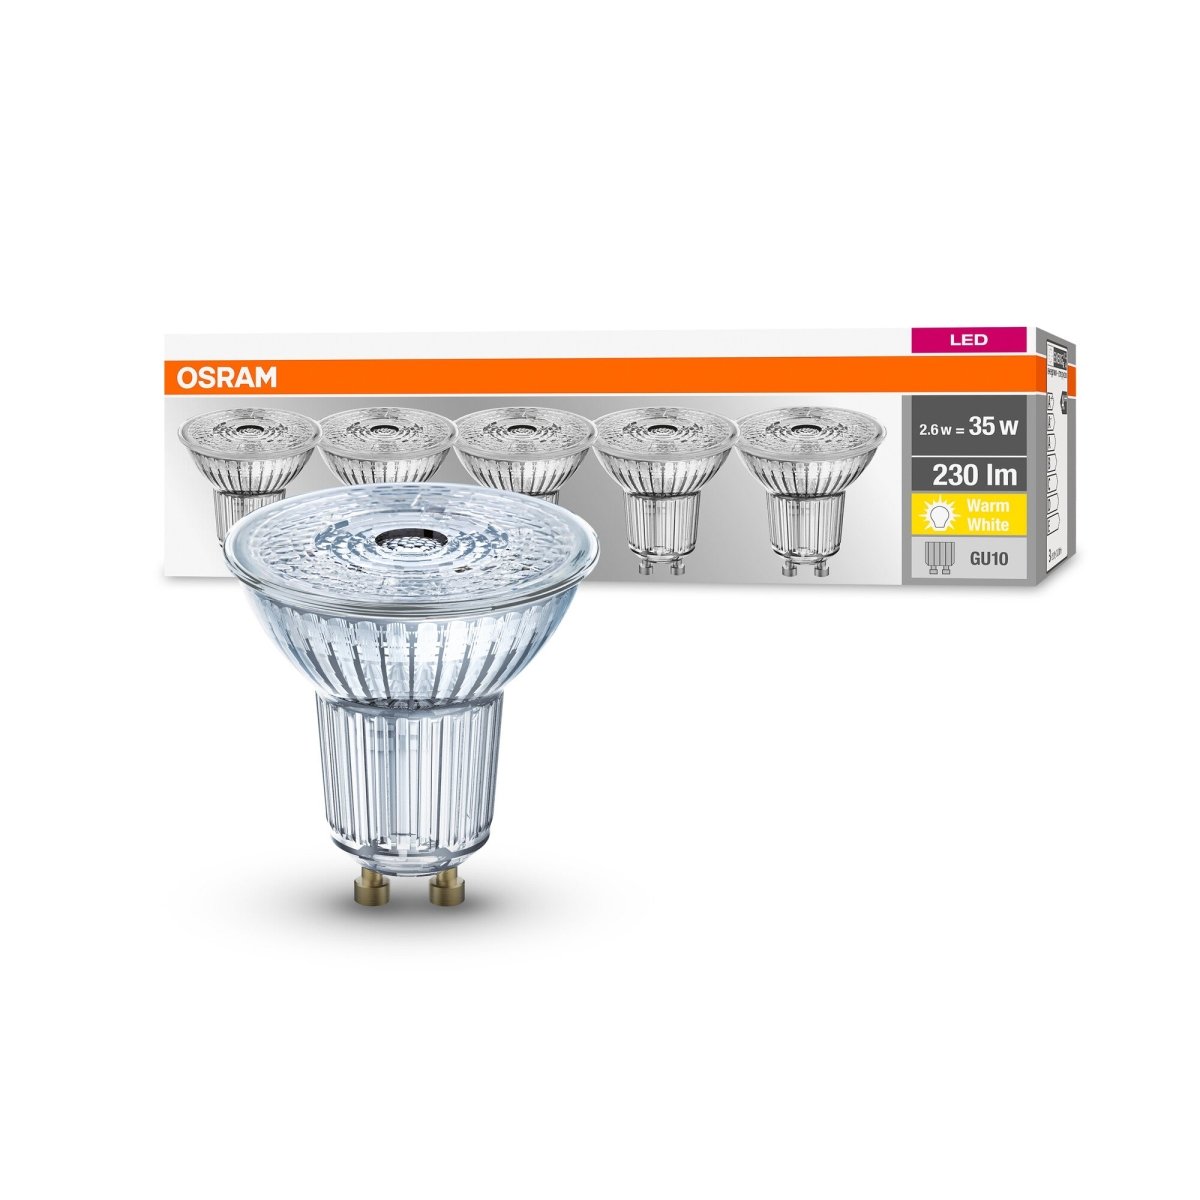 5 szt. wysokiej jakości lampa LED typu downlight GU10 2,6 W PAR16 BASE ciepłobiała - eshop LEDVANCE 4058075157941